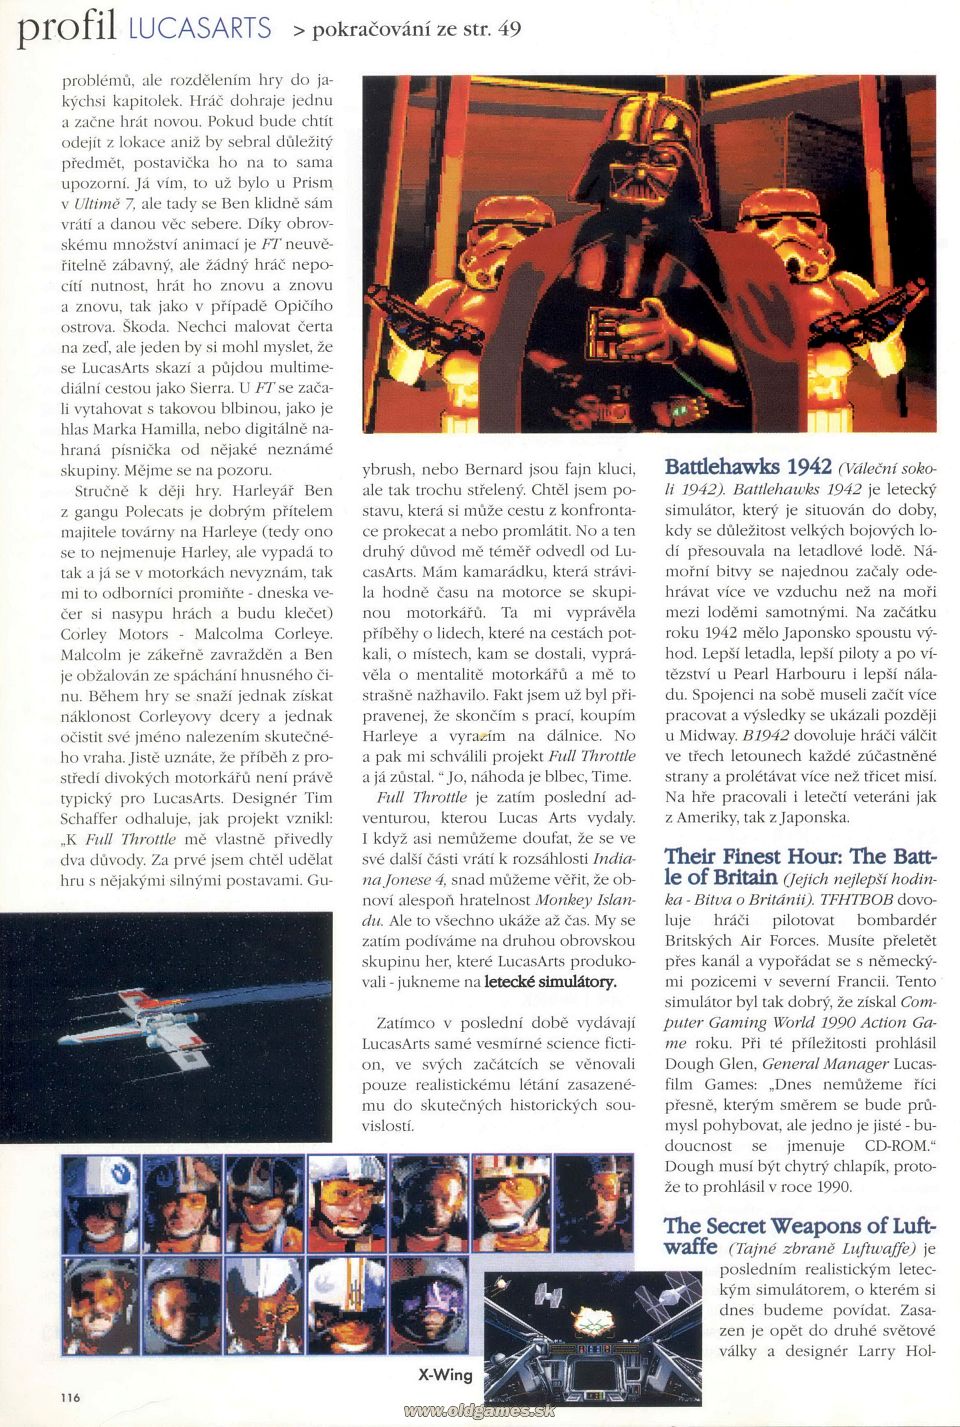 LucasArts - Profil